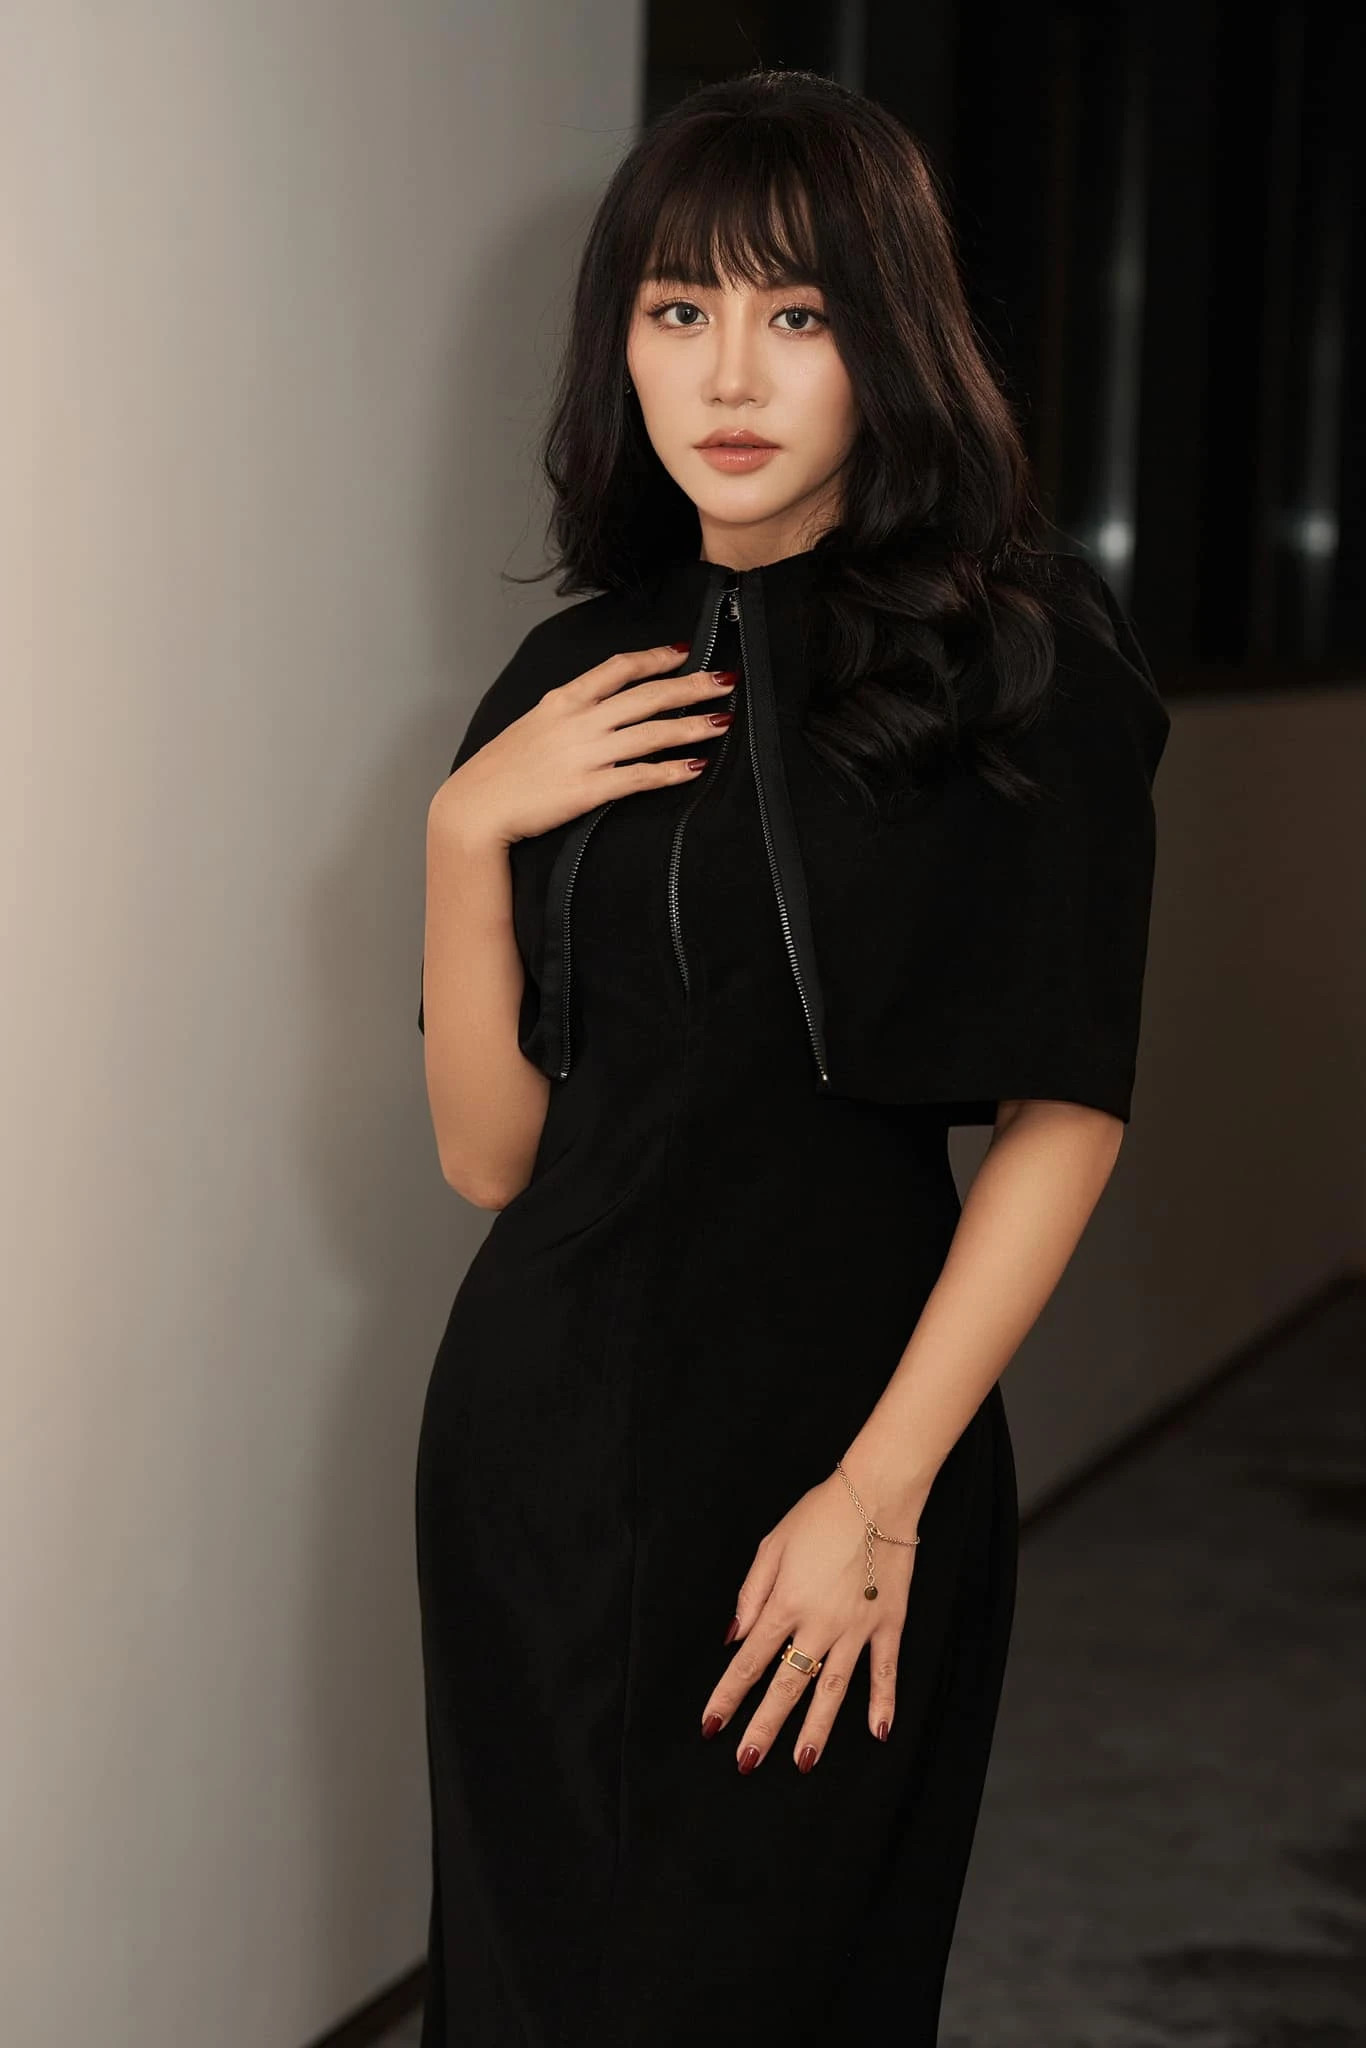 Nữ ca sĩ nổi tiếng showbiz Việt không còn niềm tin vào đàn ông, tuyên bố sẽ không lấy chồng, sinh con - ảnh 1